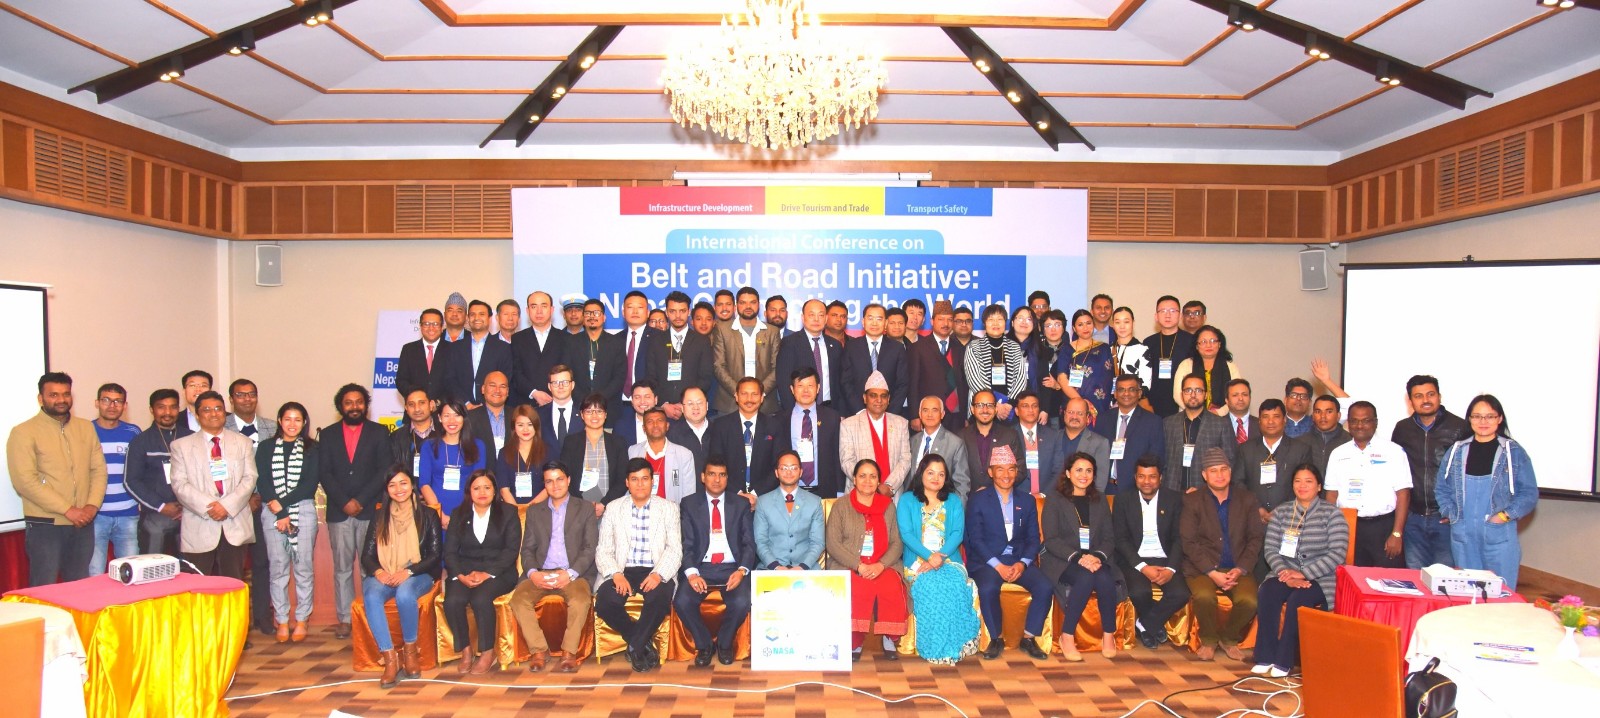 一带一路”国际交通联盟尼泊尔研讨会在加德满都召开